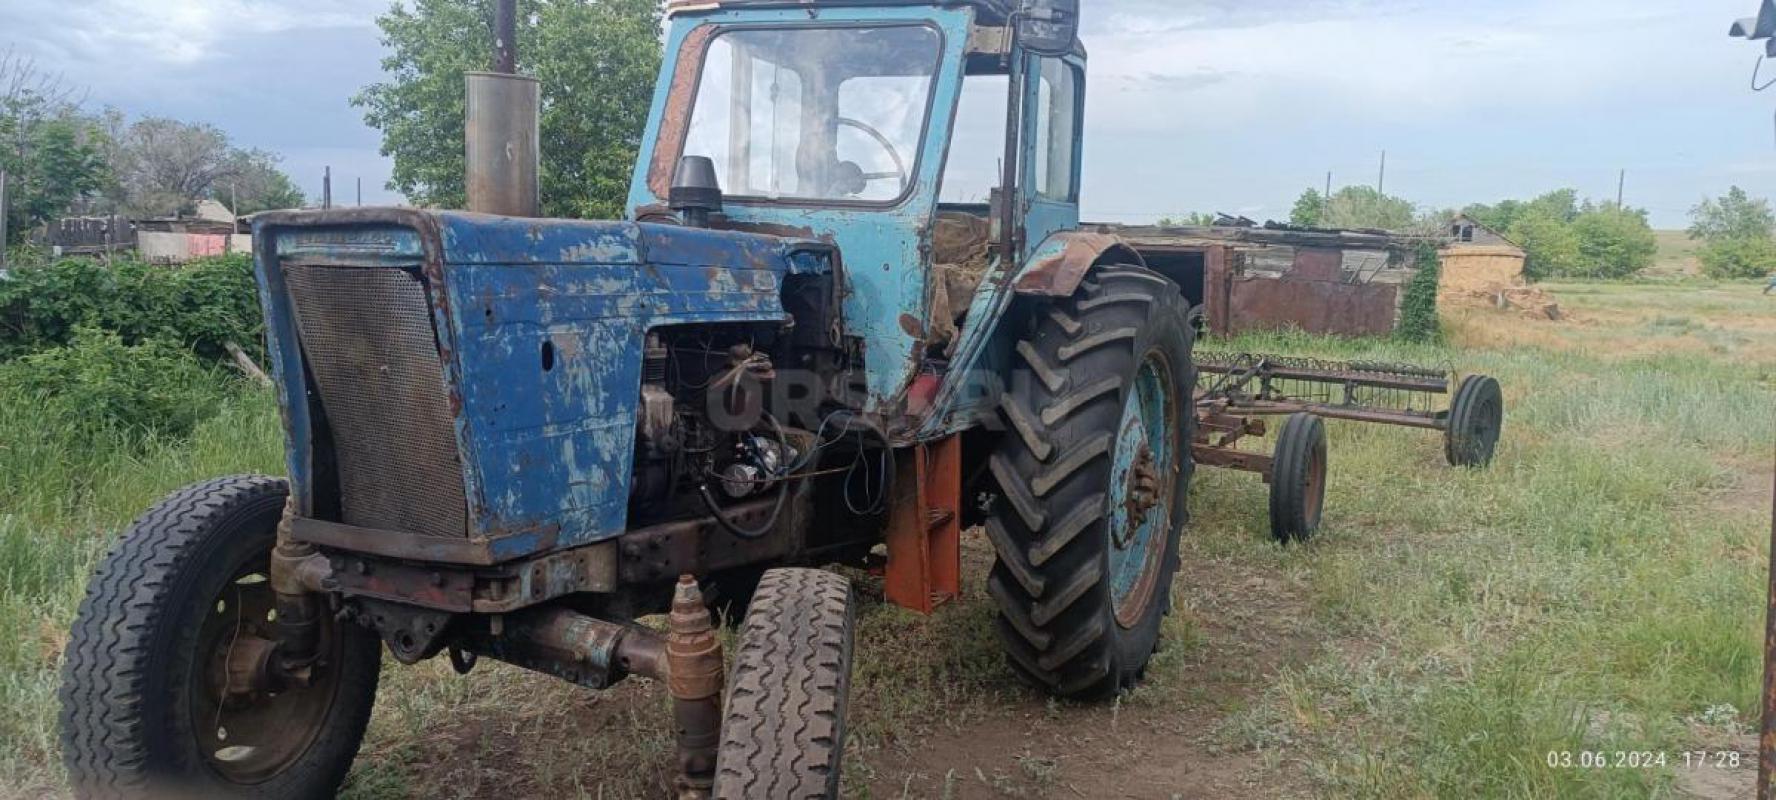 Трактор МТЗ на полном ходу с косилкой и граблями, находится в ясненьском районе, село каракуль, возм - Орск